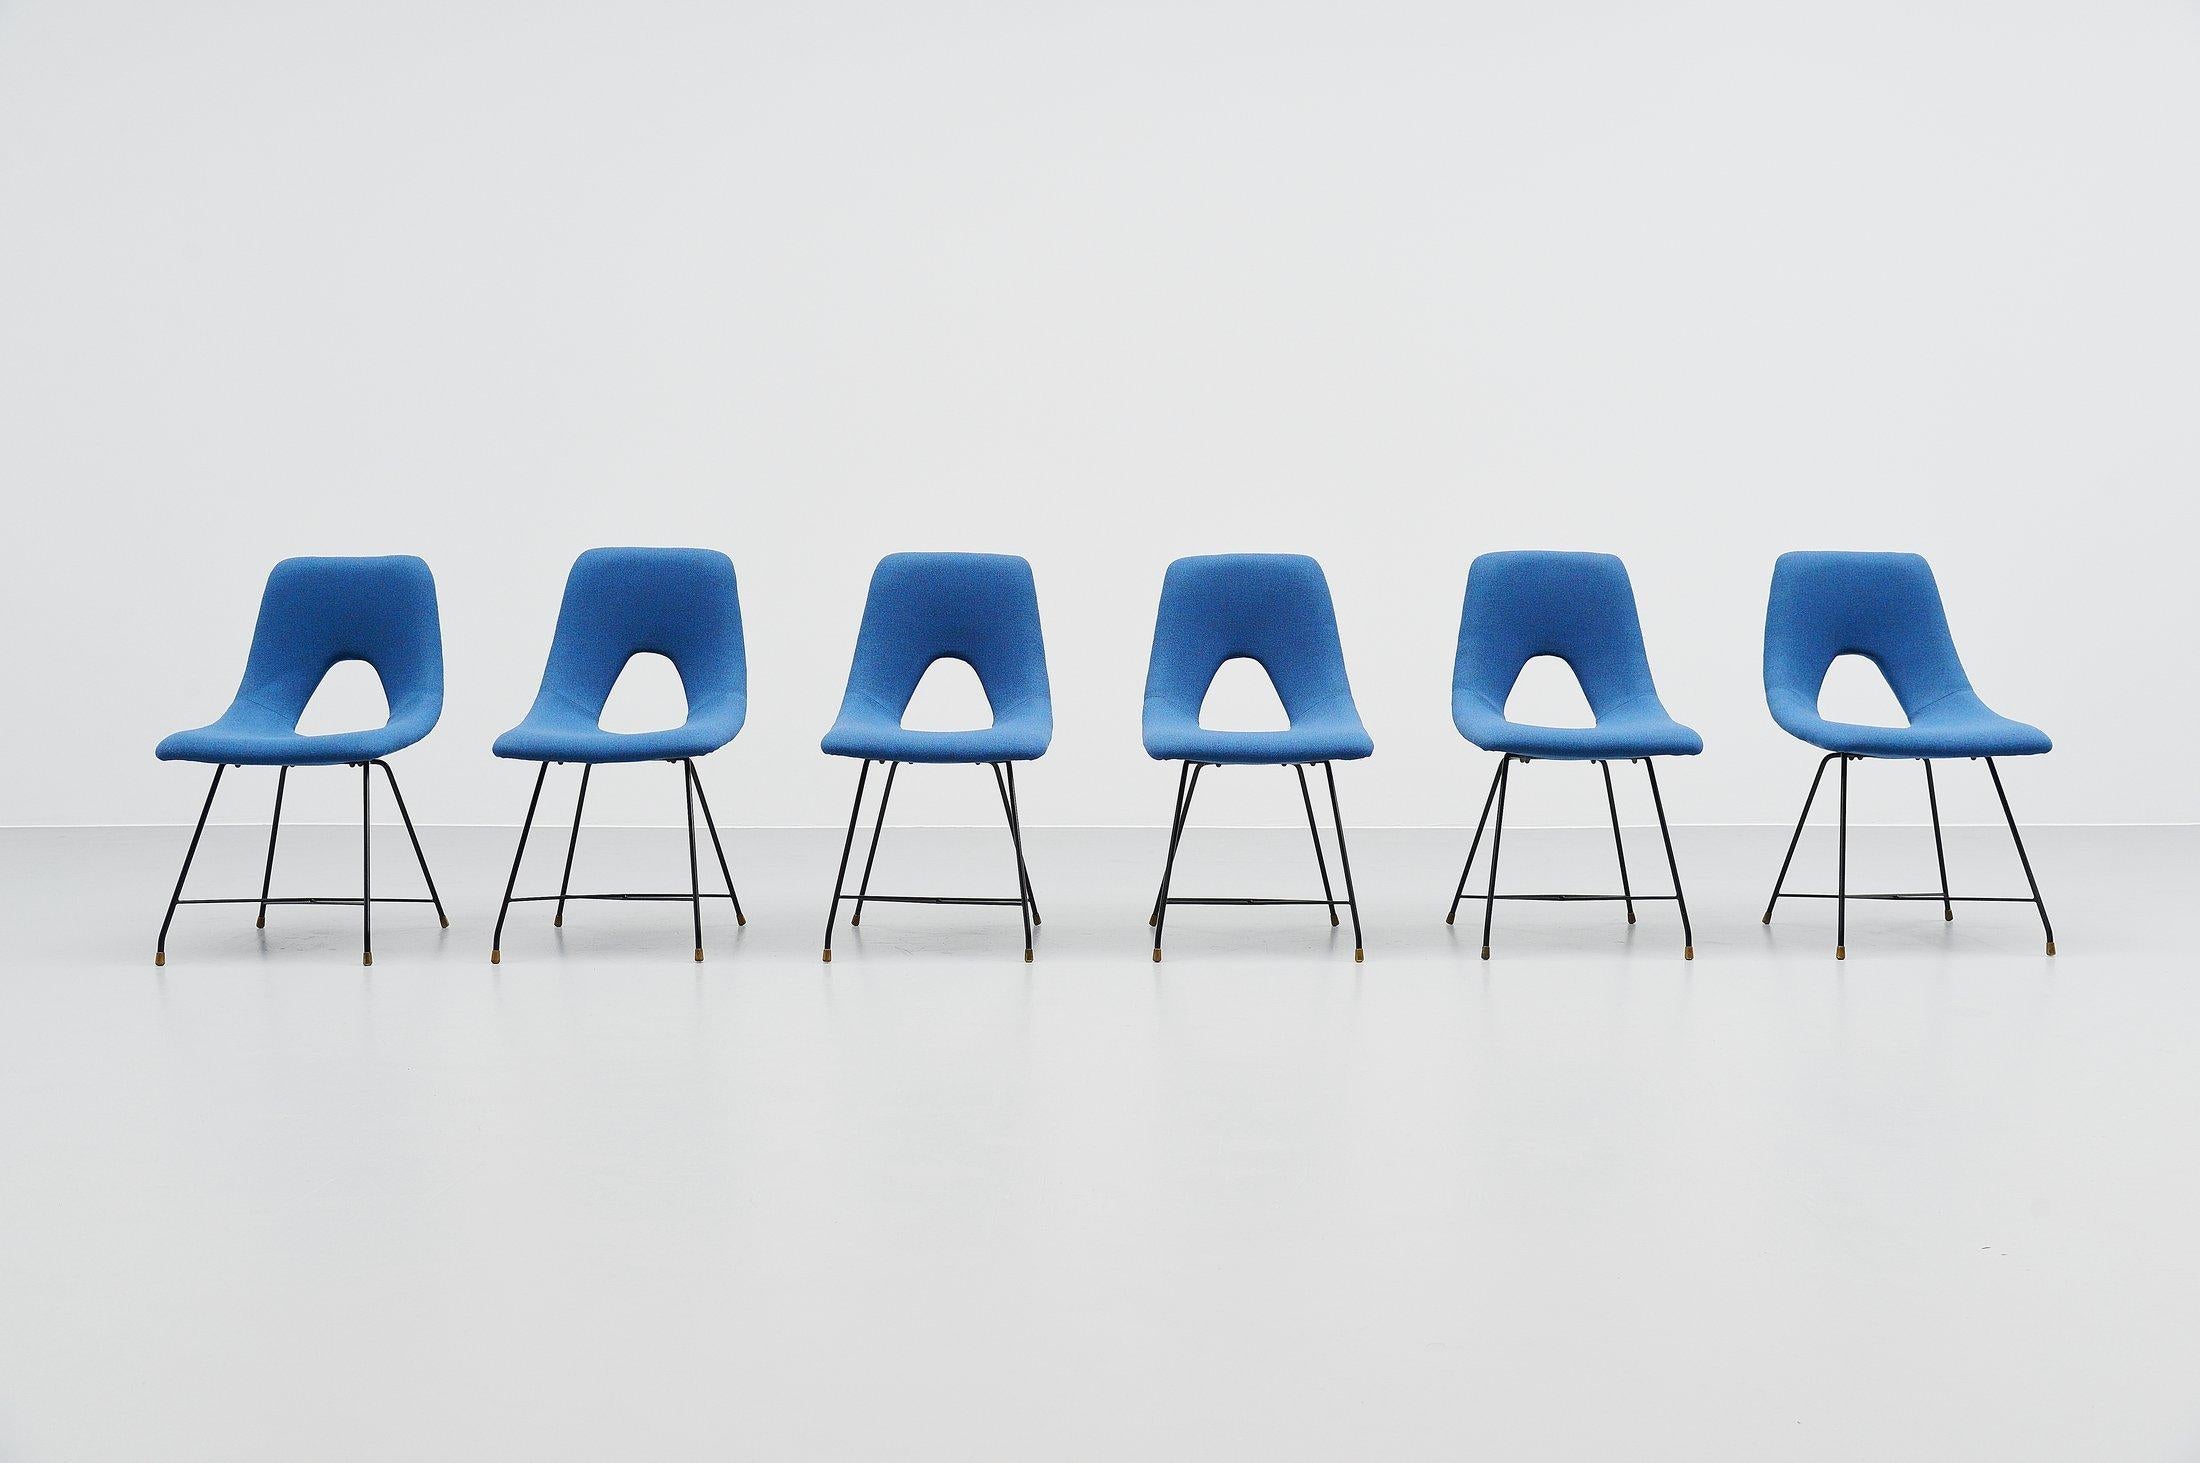 Ensemble très rare de 6 chaises de salle à manger conçu par Augusto Bozzi et fabriqué par Saporiti, Italie 1954. Ces chaises ont une structure en fil métallique laqué noir avec des pieds en laiton. Les chaises ont été recouvertes d'un tissu bleu